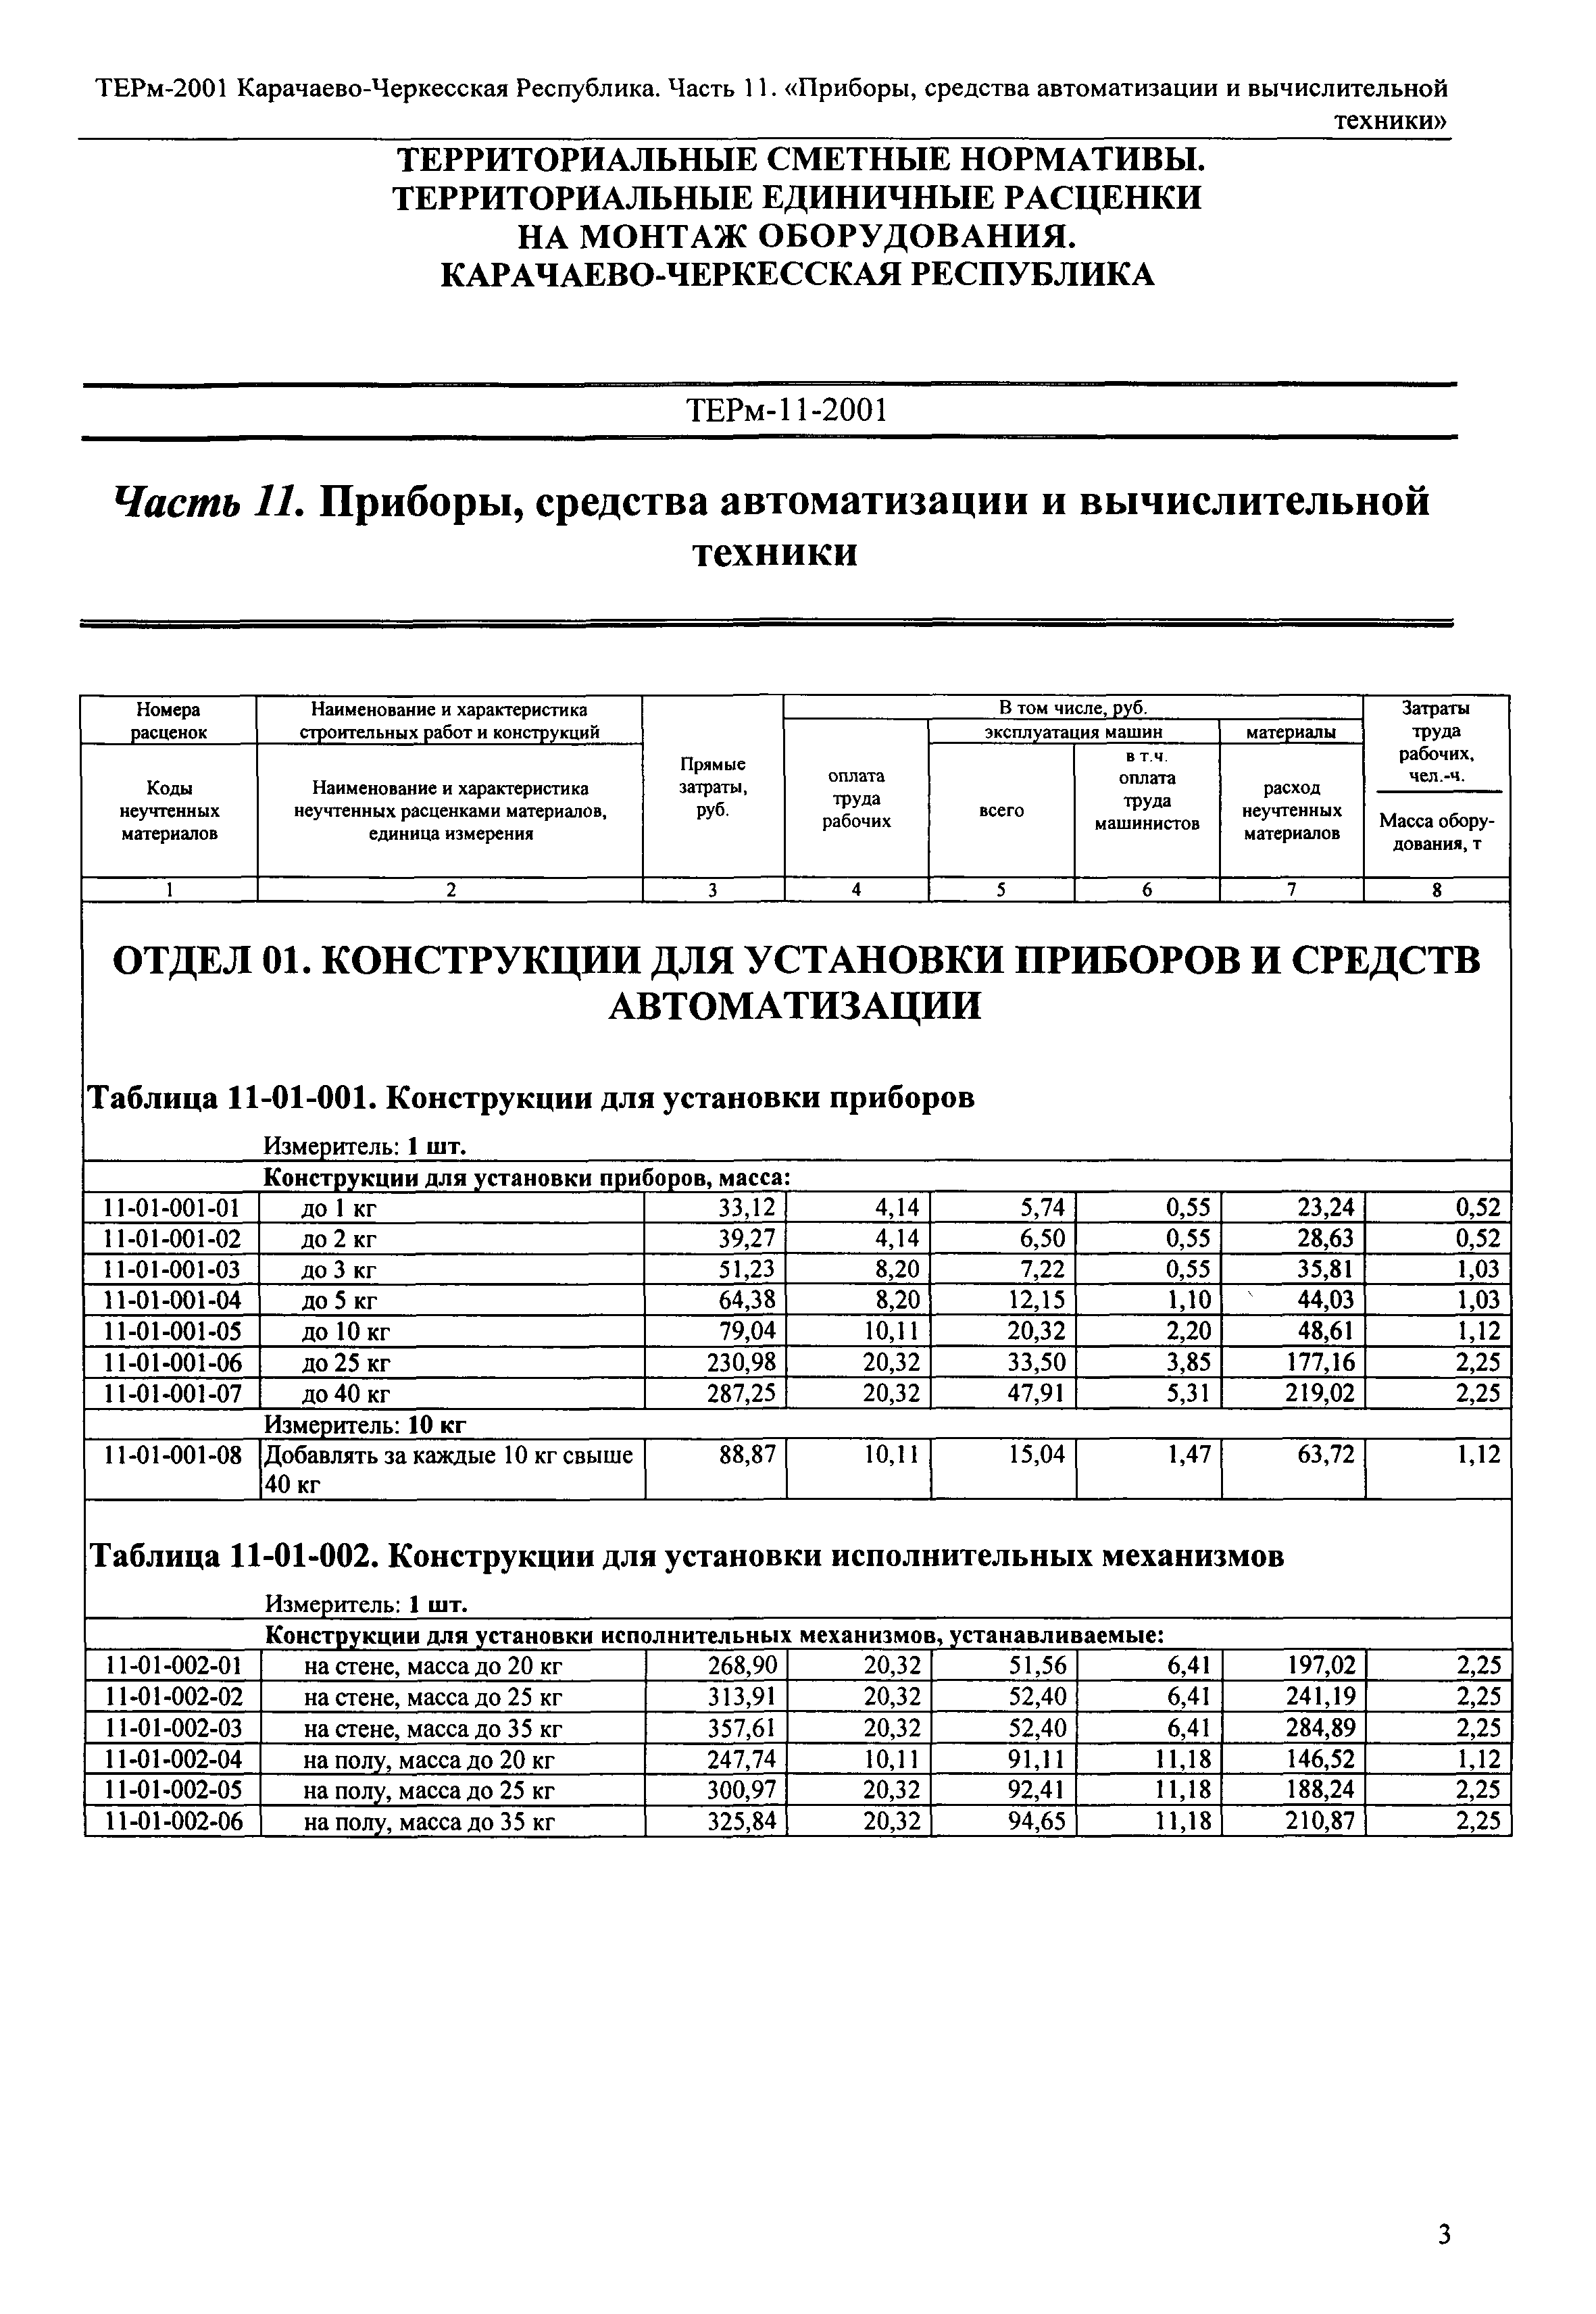 ТЕРм Карачаево-Черкесская Республика 11-2001